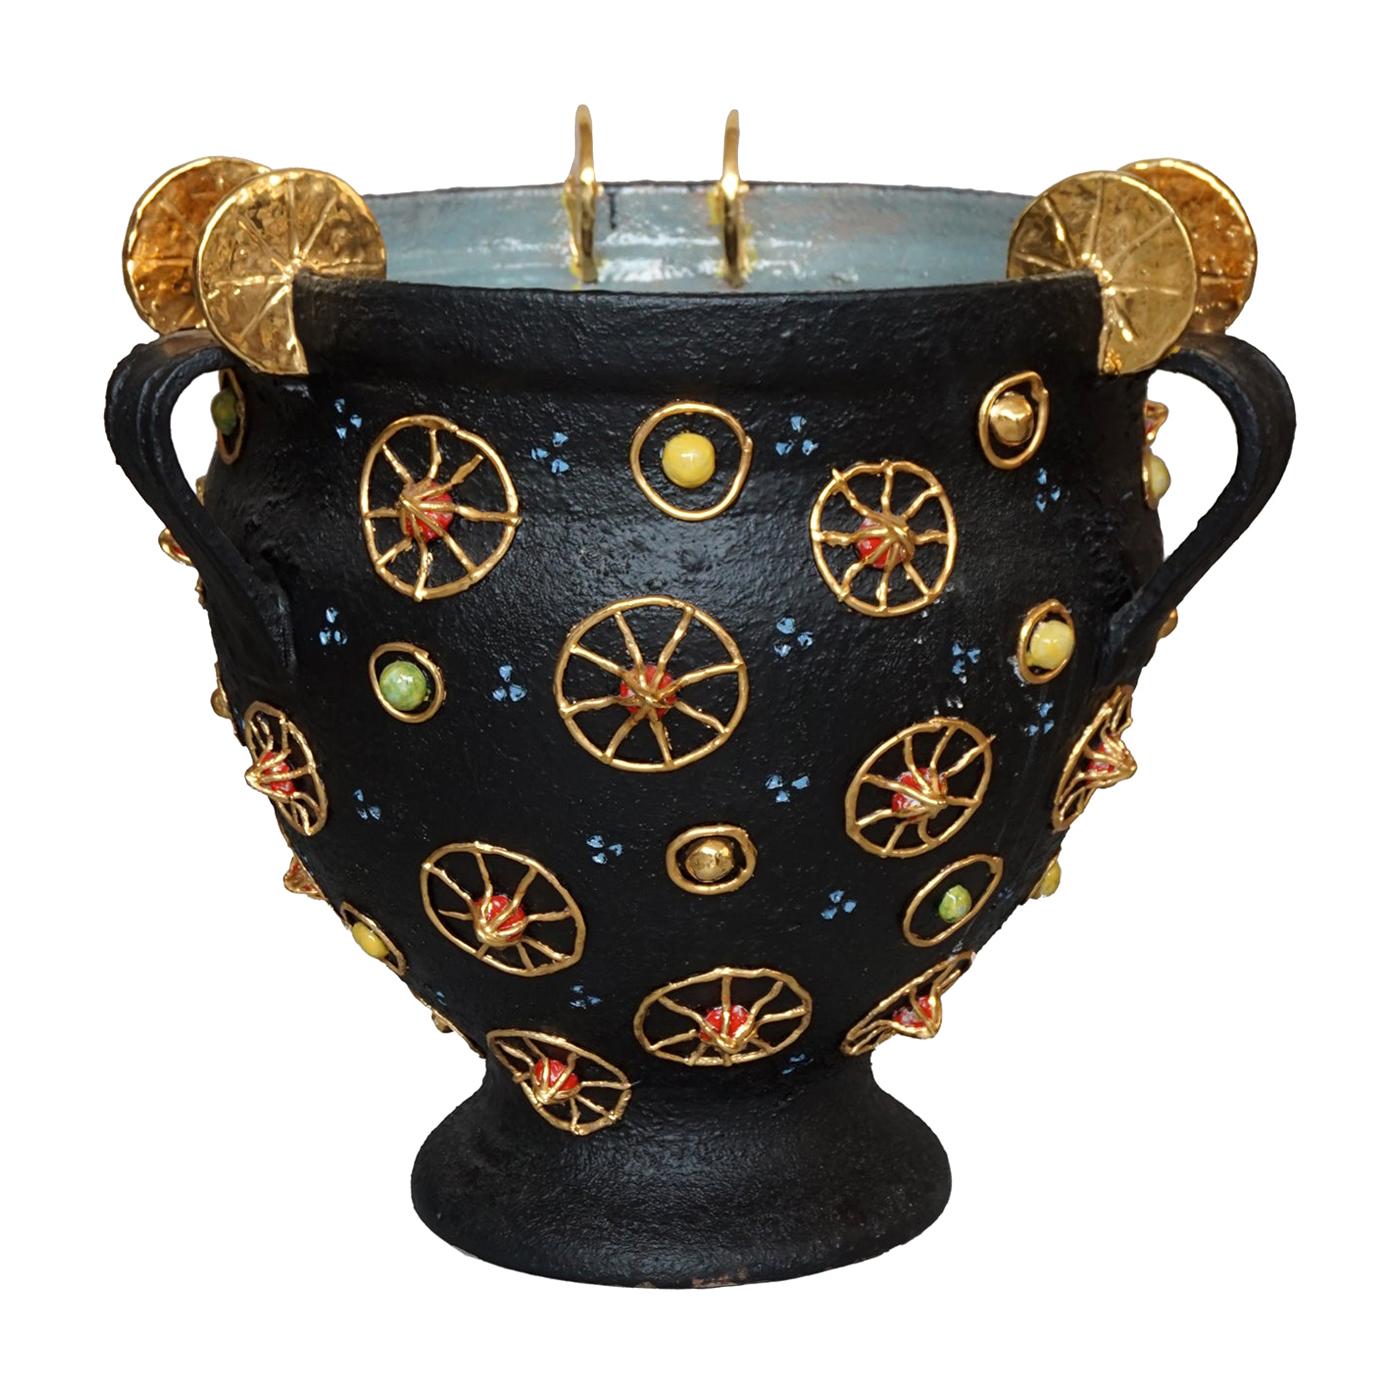 Etruscan Vase - 25 For Sale on 1stDibs | etruscan vases